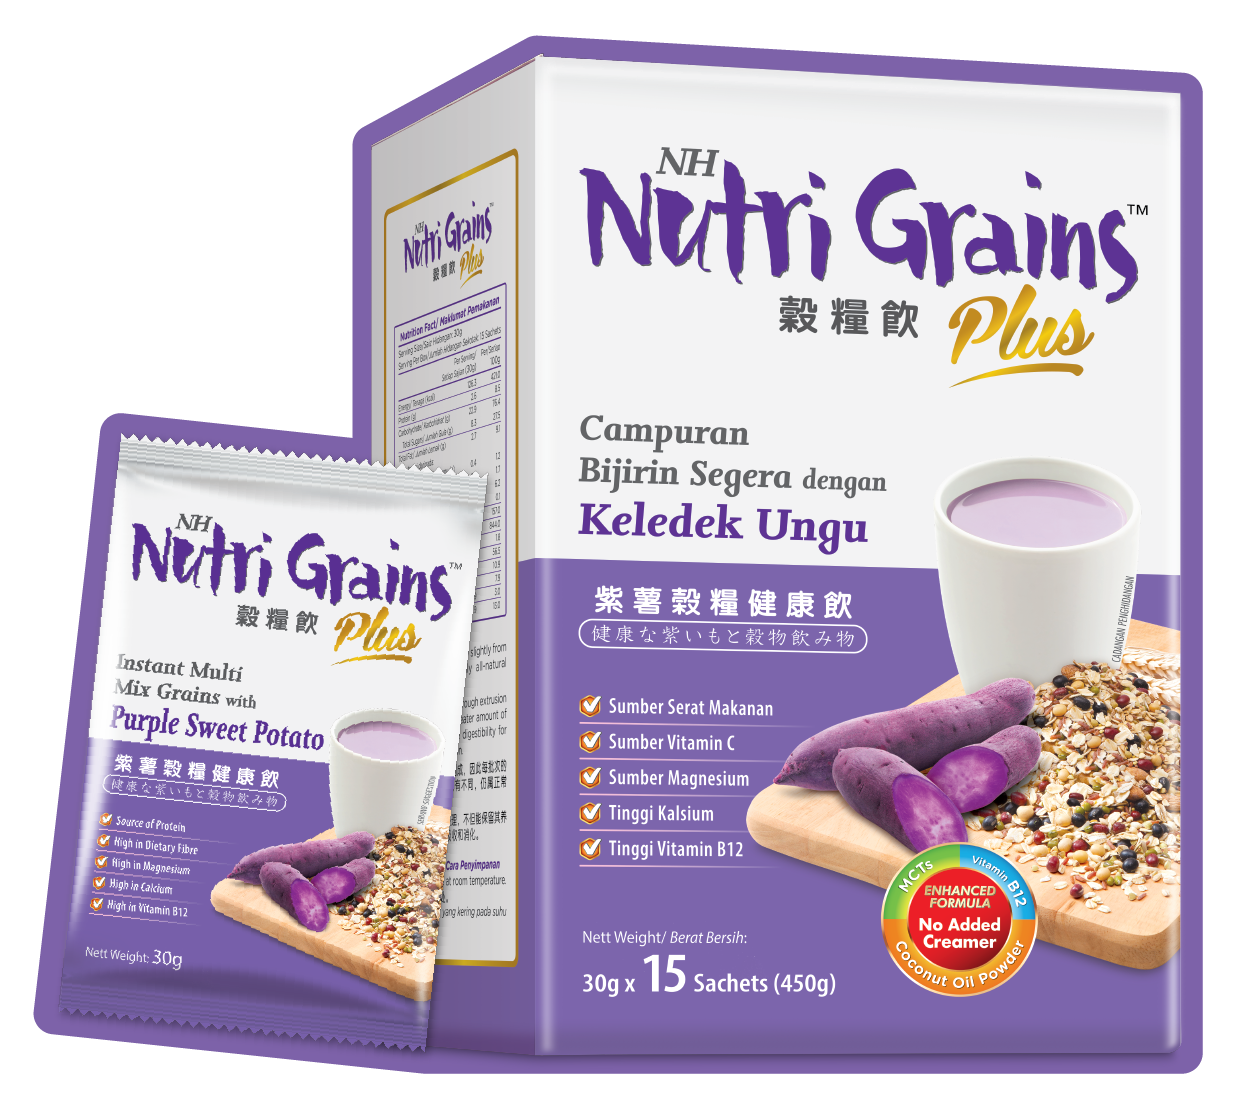 NH Nutri Grains_NLP DPS231223_3